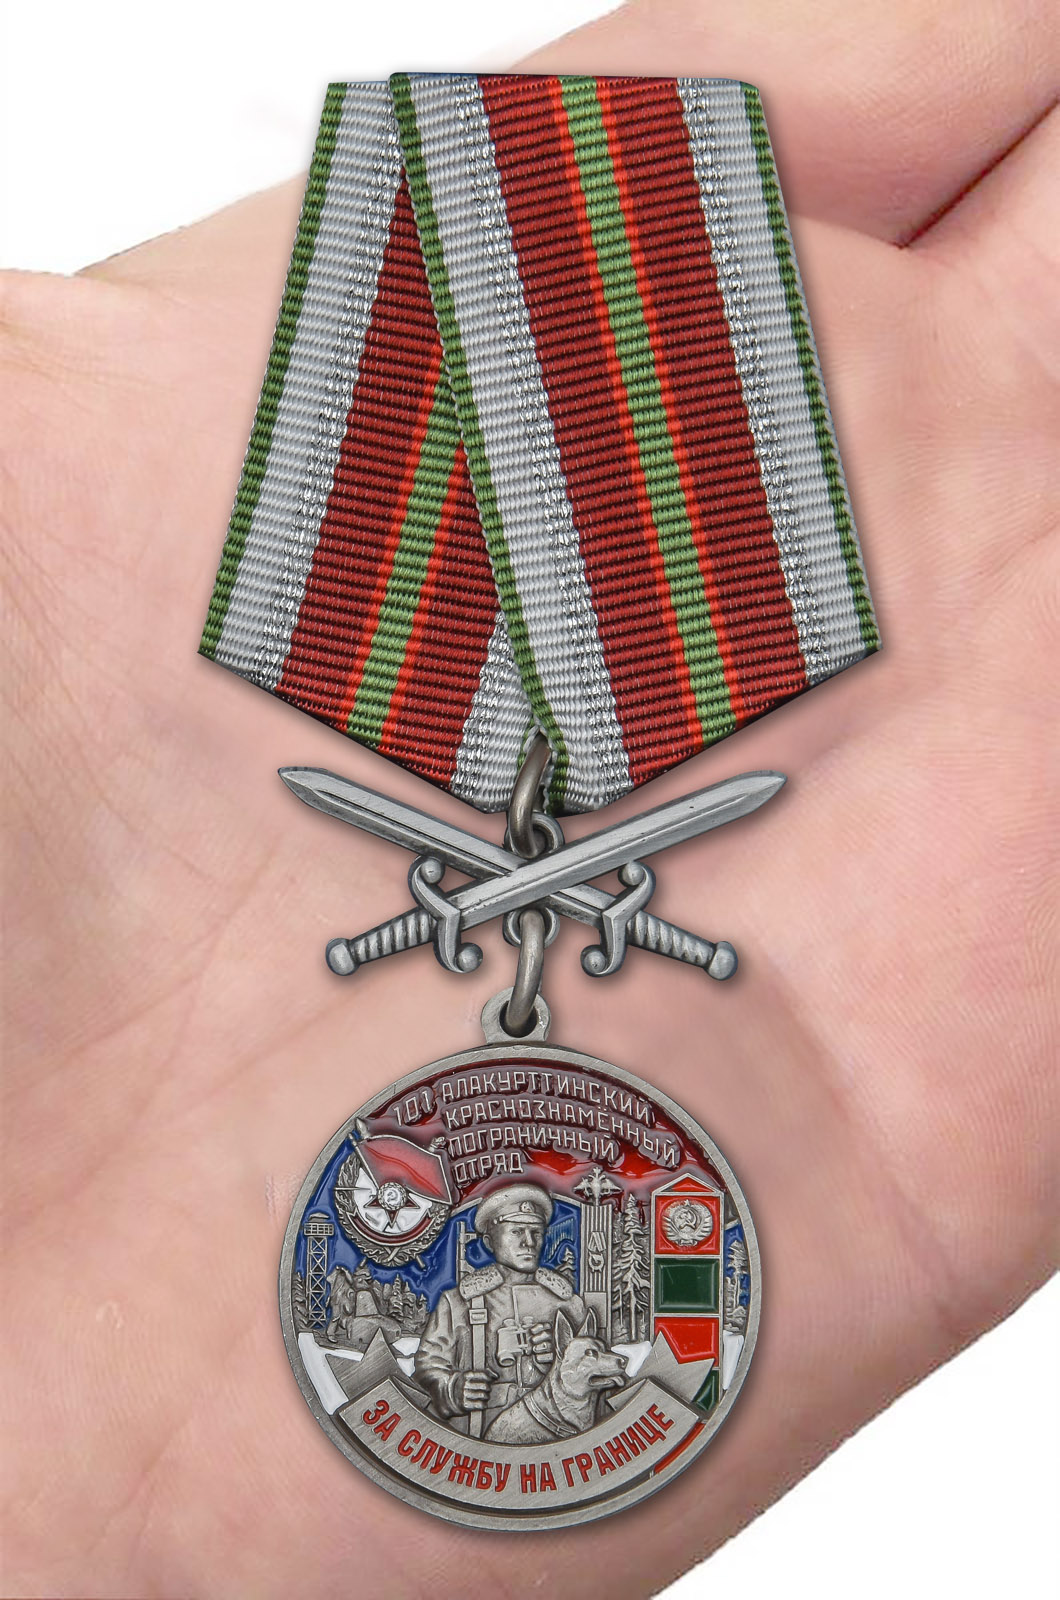 Медаль "За службу в Алакурттинском пограничном отряде" 